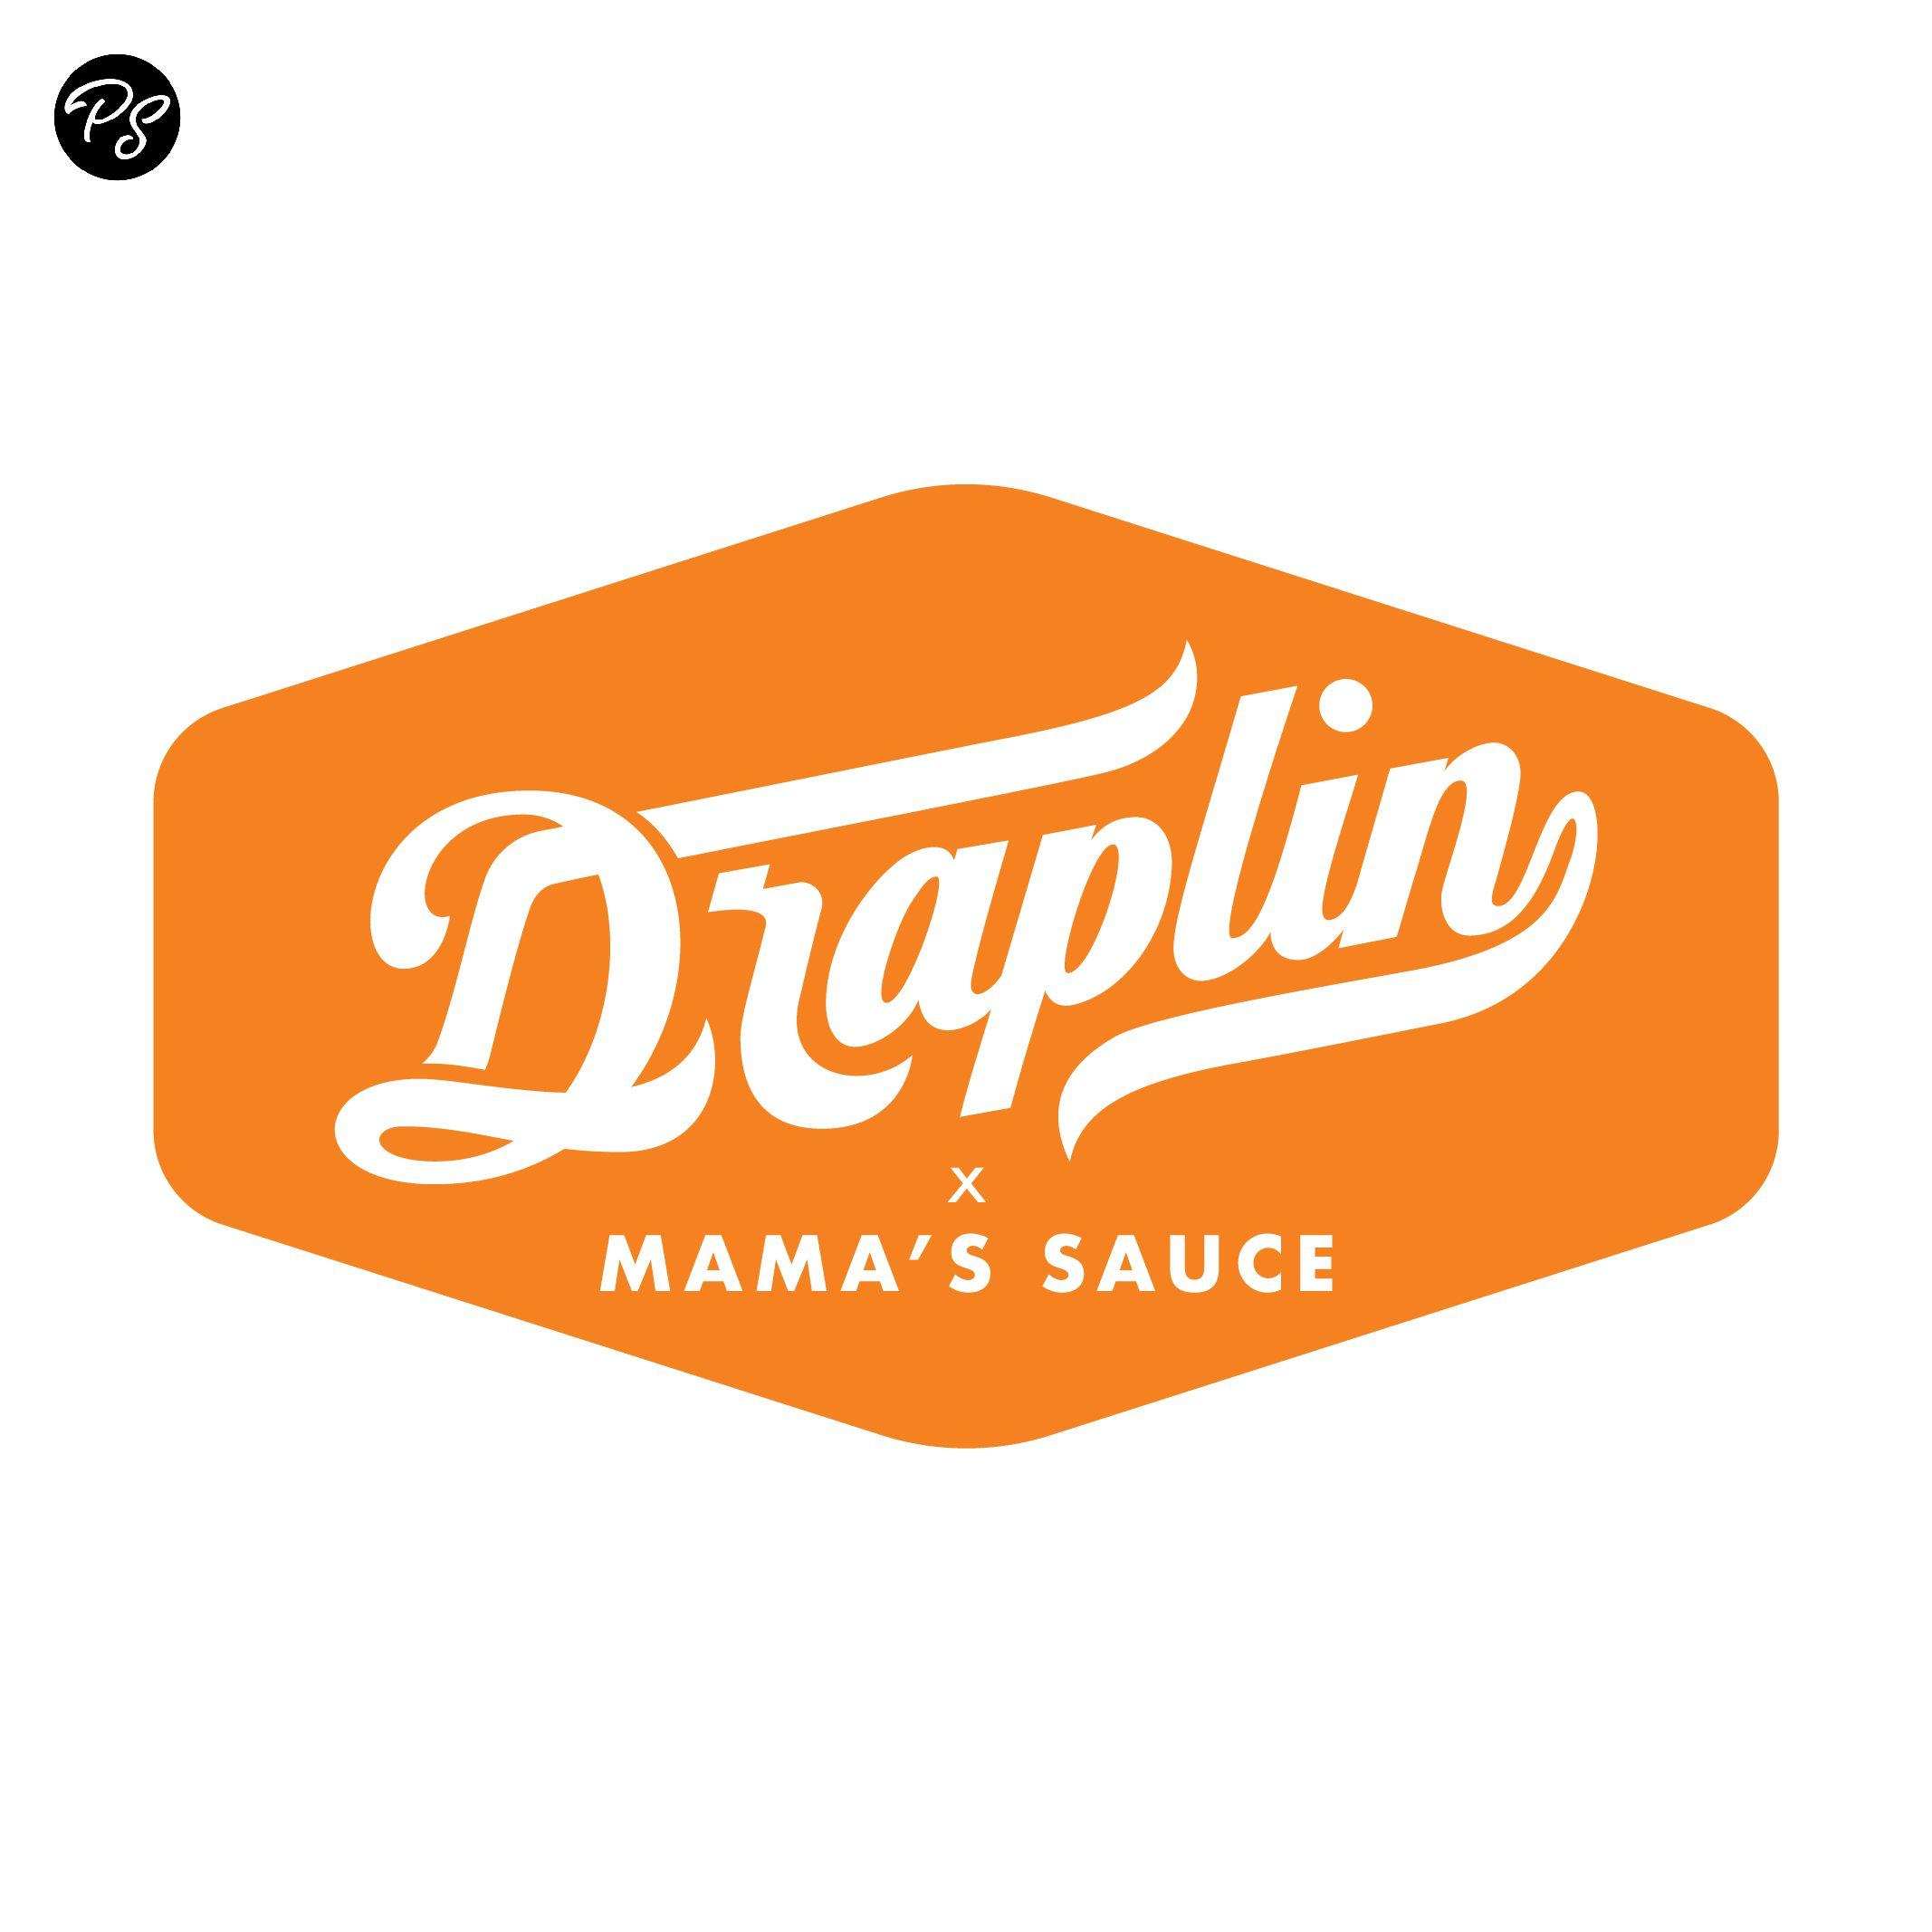 Sauce Logo - Draplin x Mama's Sauce Logo Inspiration • Blog Post by Mama's